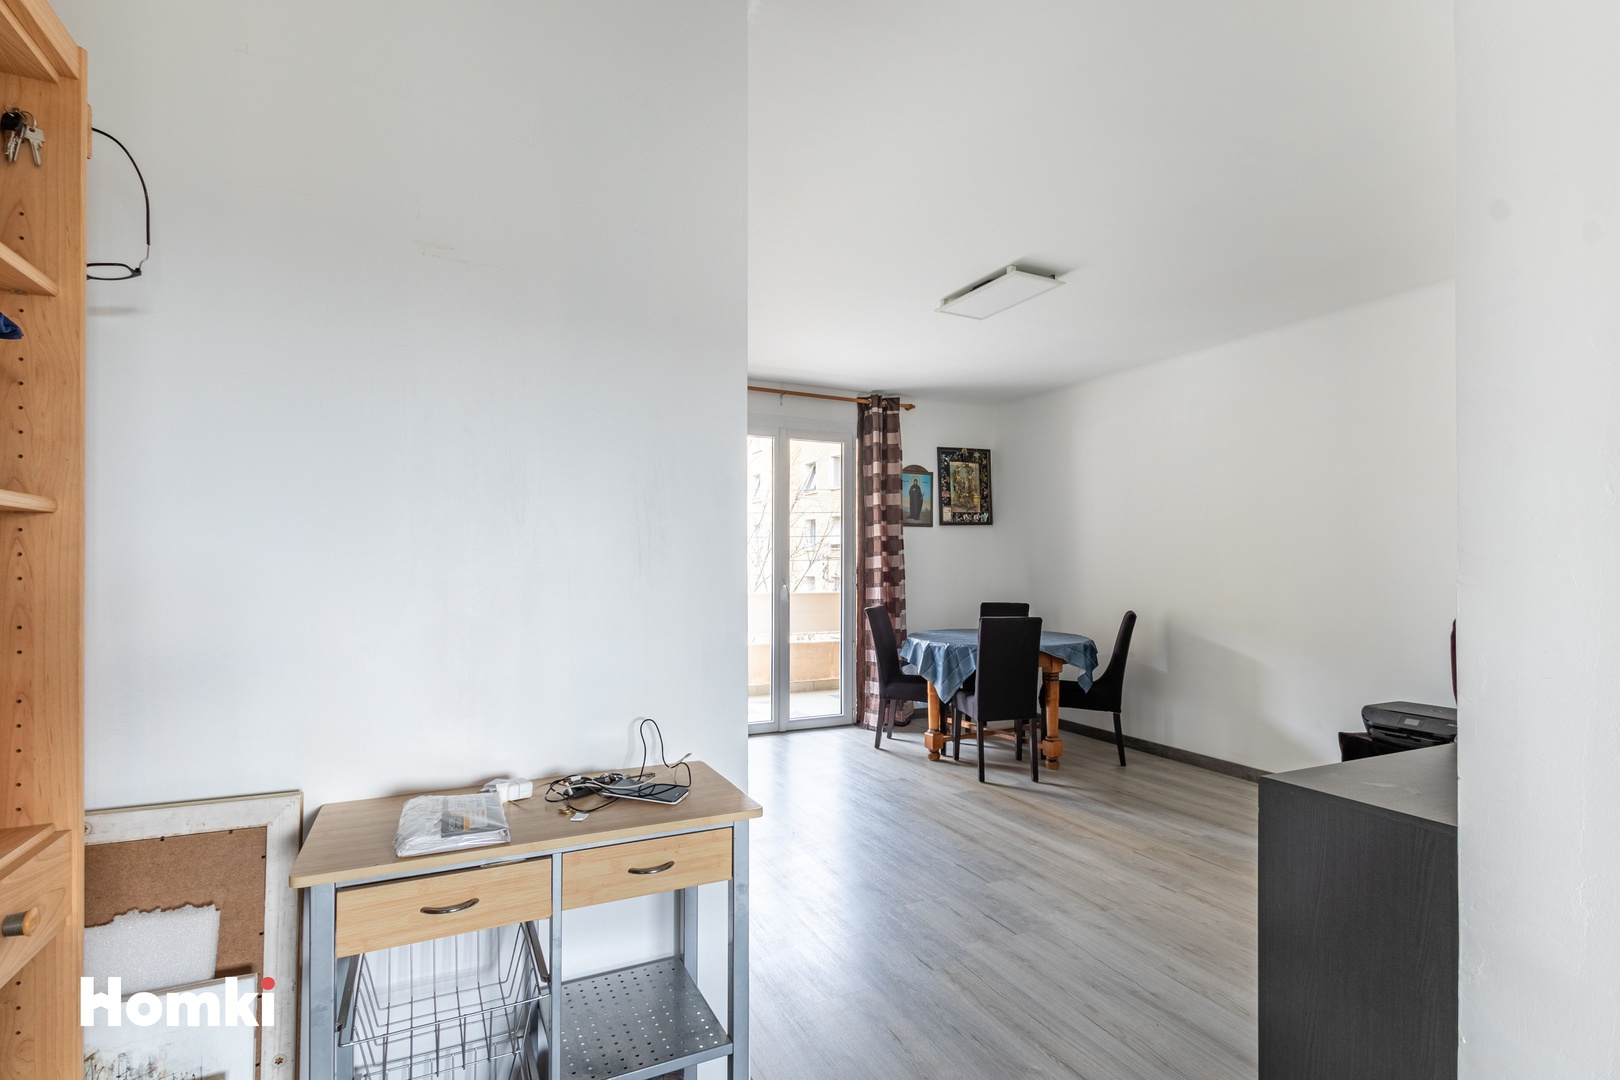 Homki - Vente Appartement  de 70.0 m² à Toulon 83200